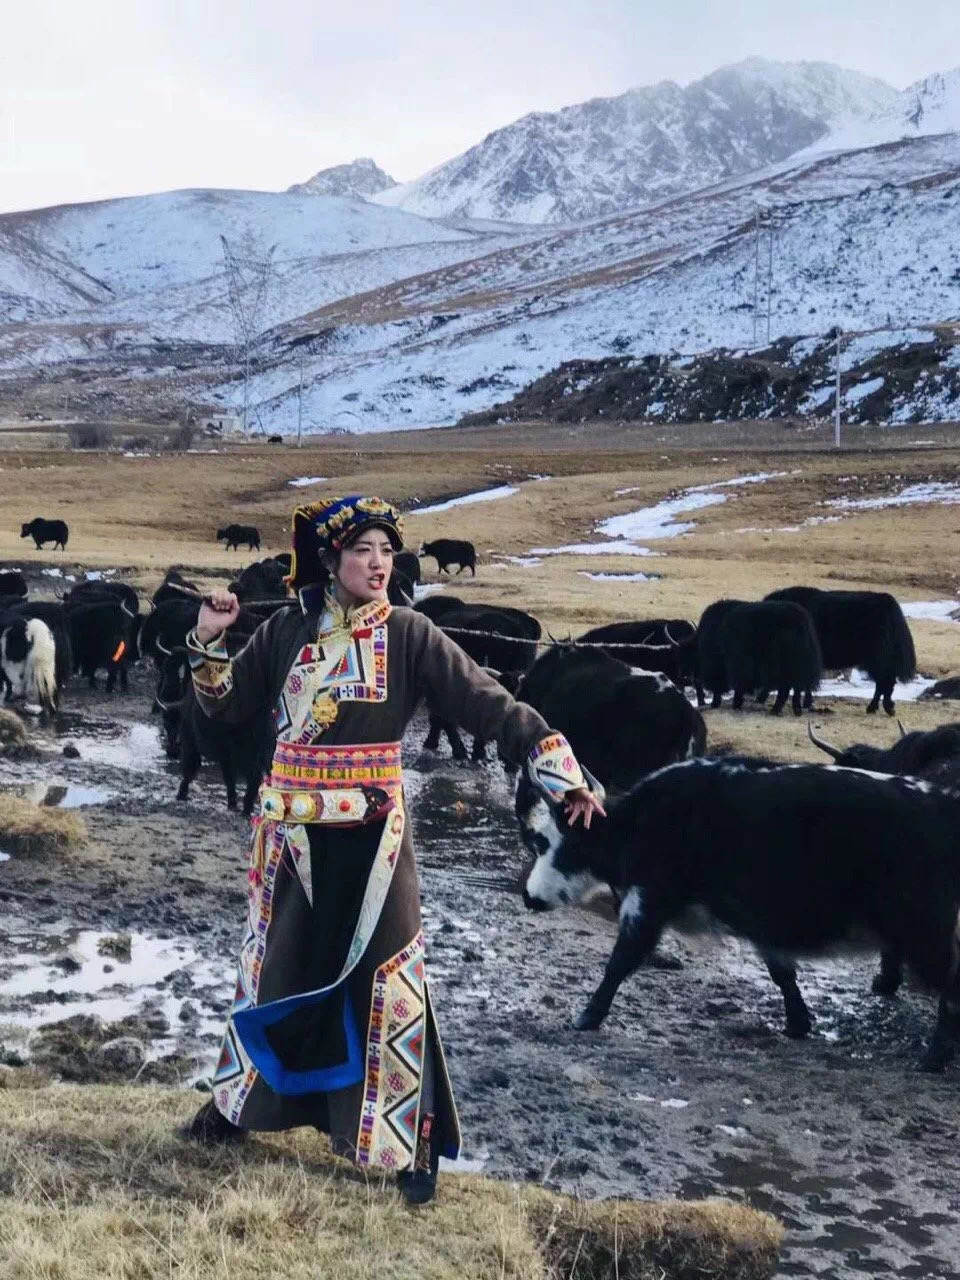 回顾:四川女孩嫁藏族小伙,放弃高薪到藏区农村生活,助力乡村扶贫